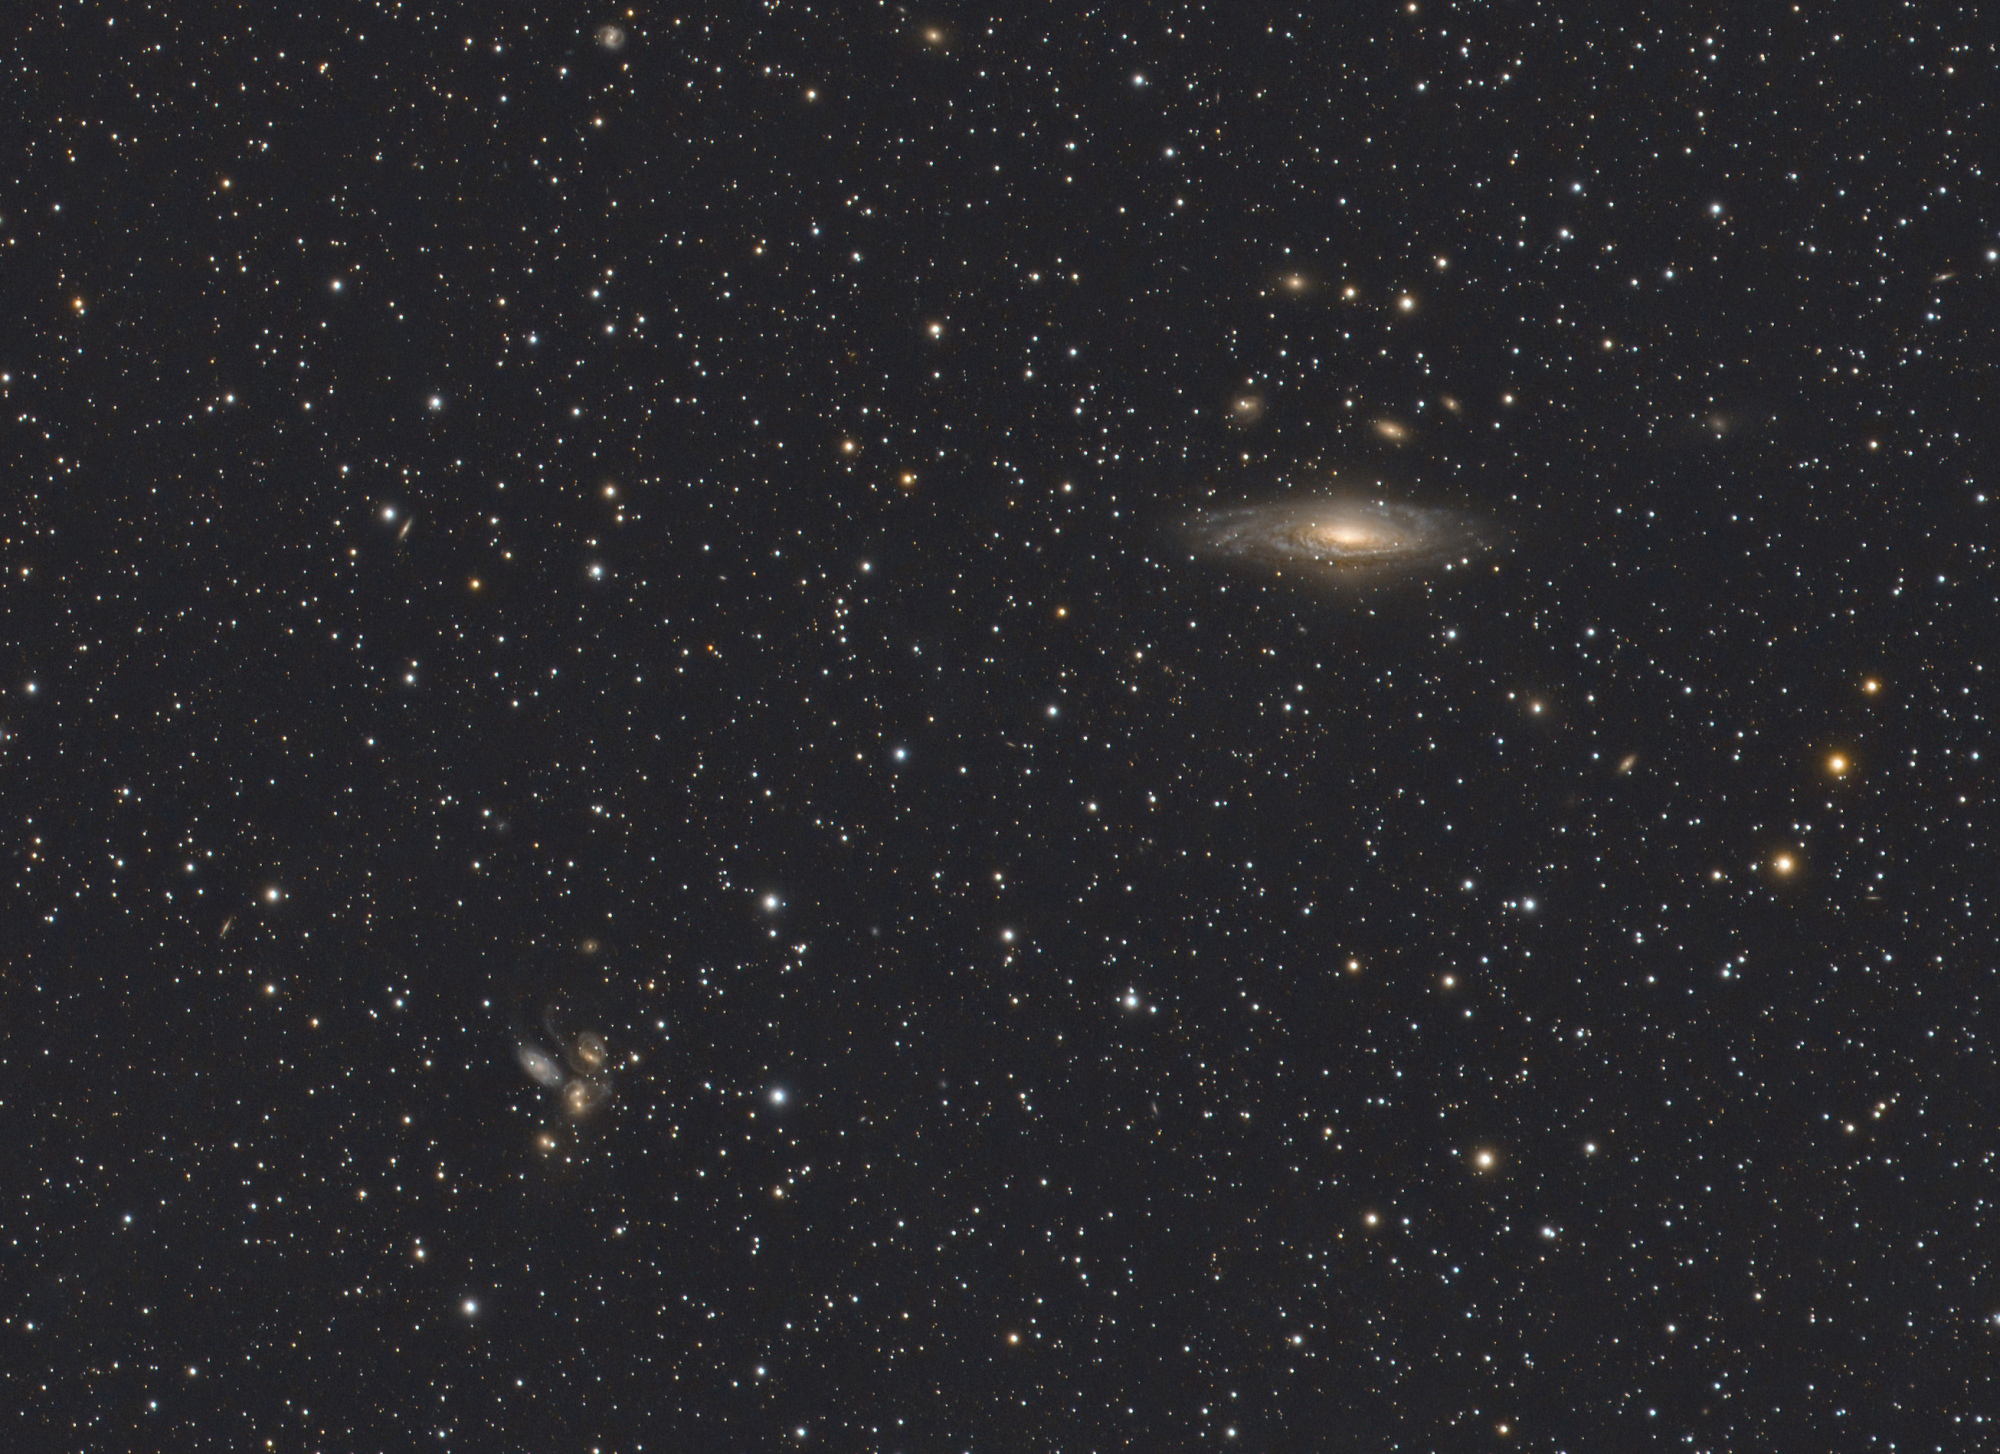 631b27c71a8e1_NGC7331-Drme-foyer-61x180sec-Recadr2.thumb.jpg.e718d0828d4698e41d02457153897000.jpg